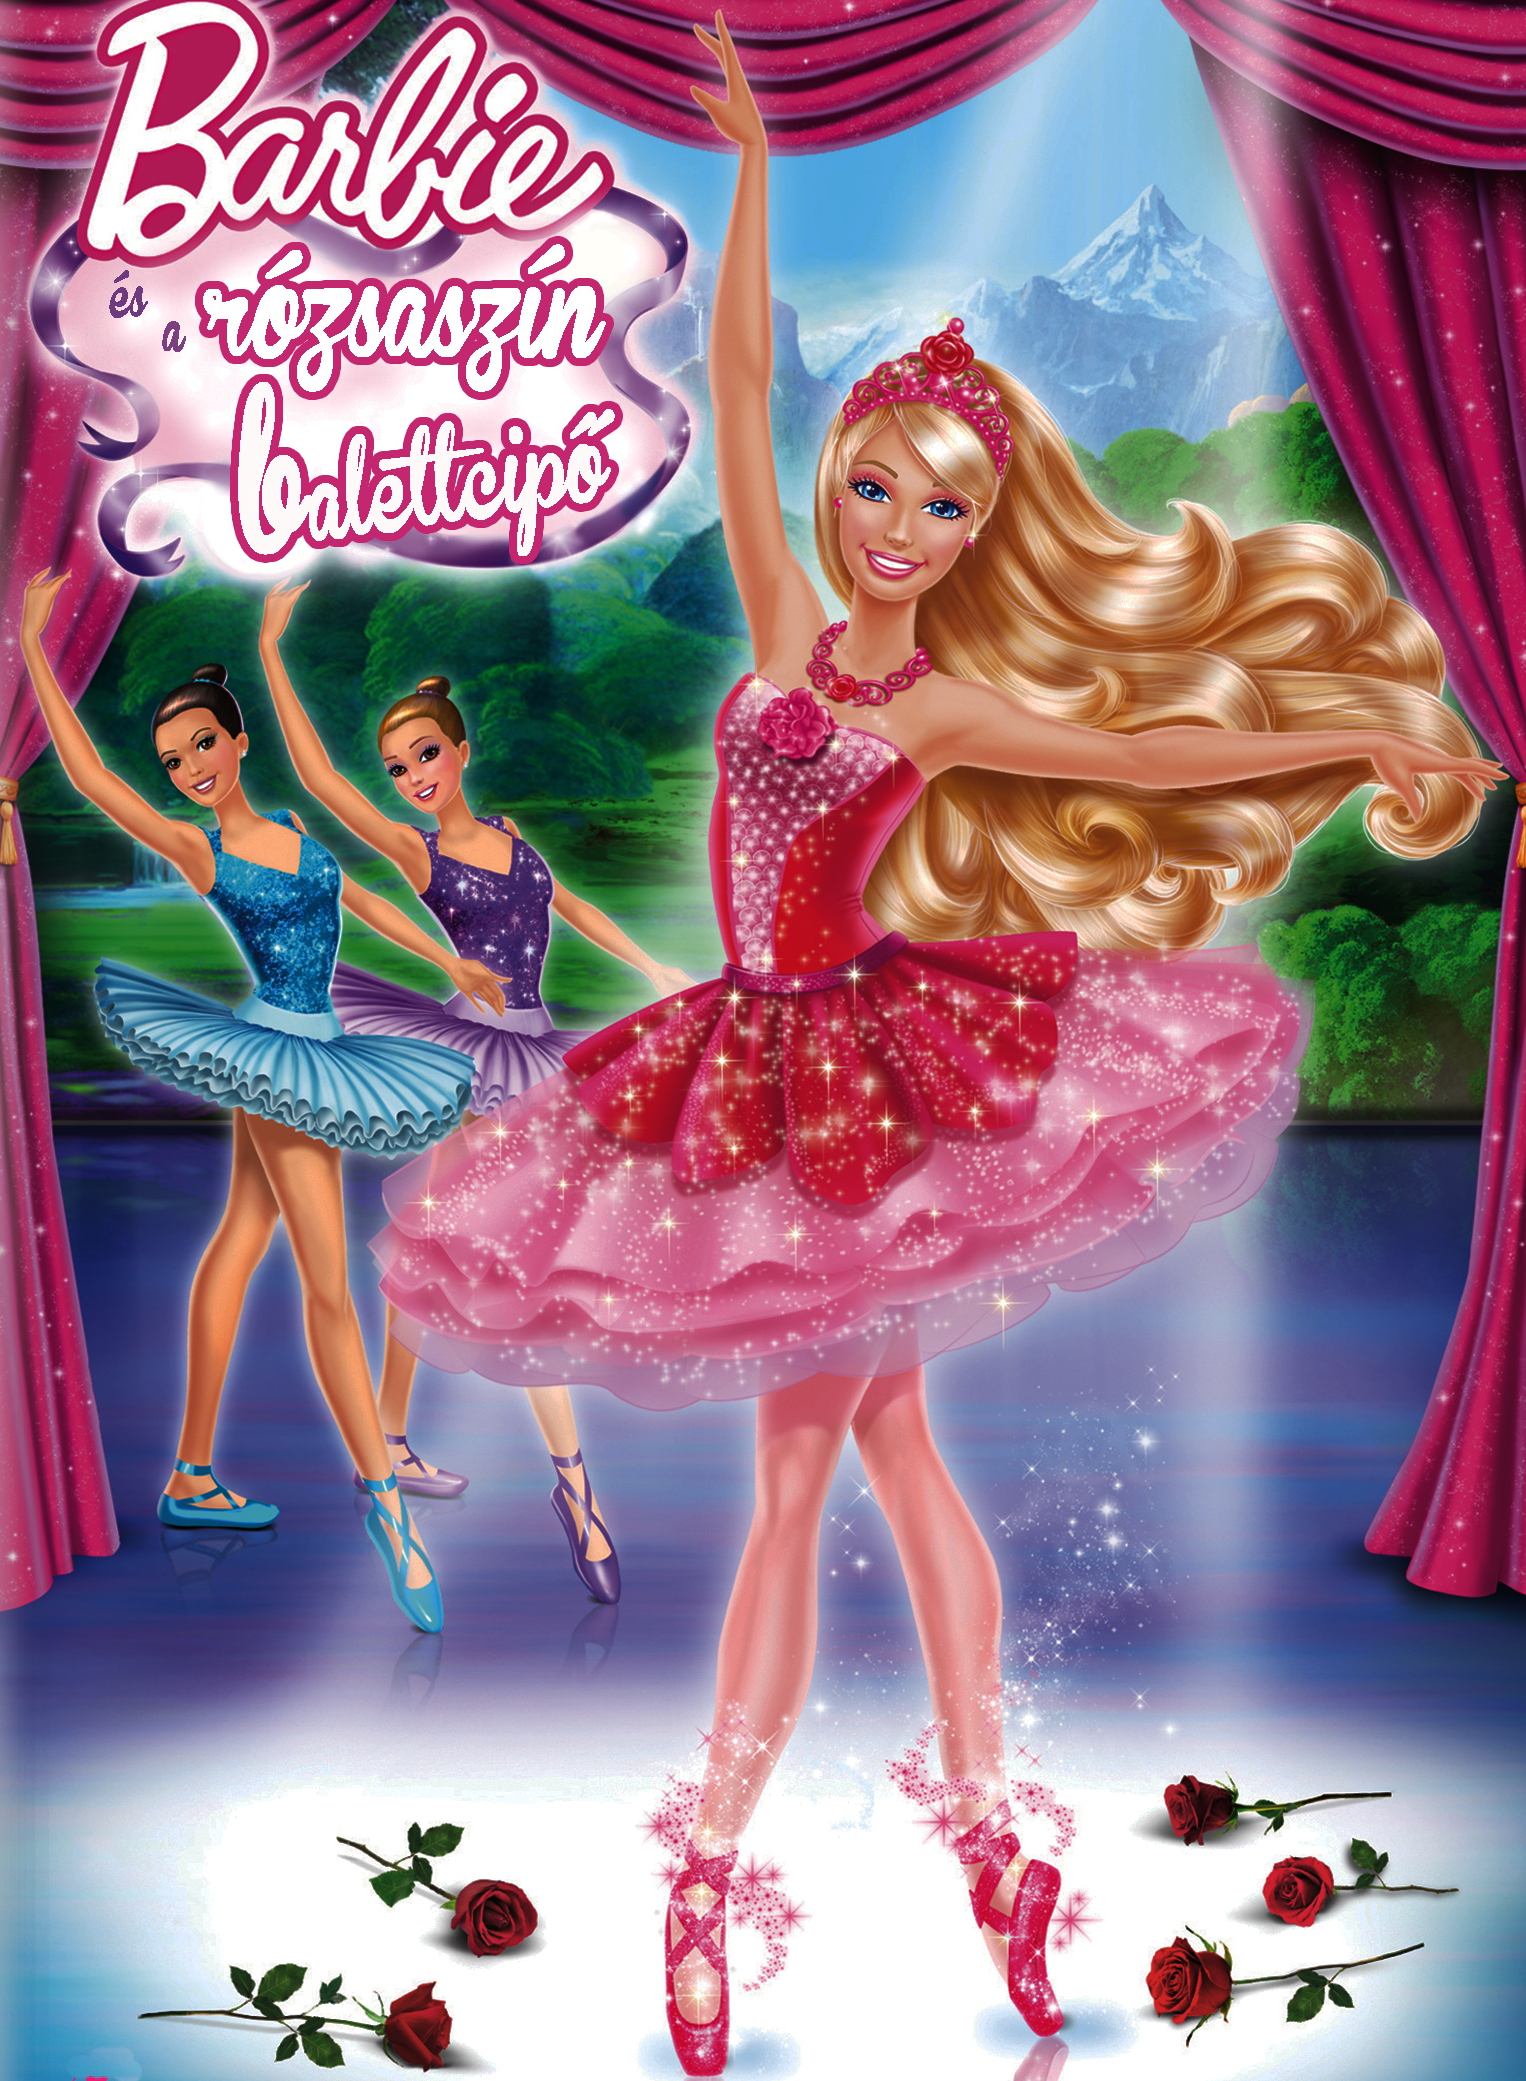 Barbie rózsaszín balettcipő teljes mese - Meséi